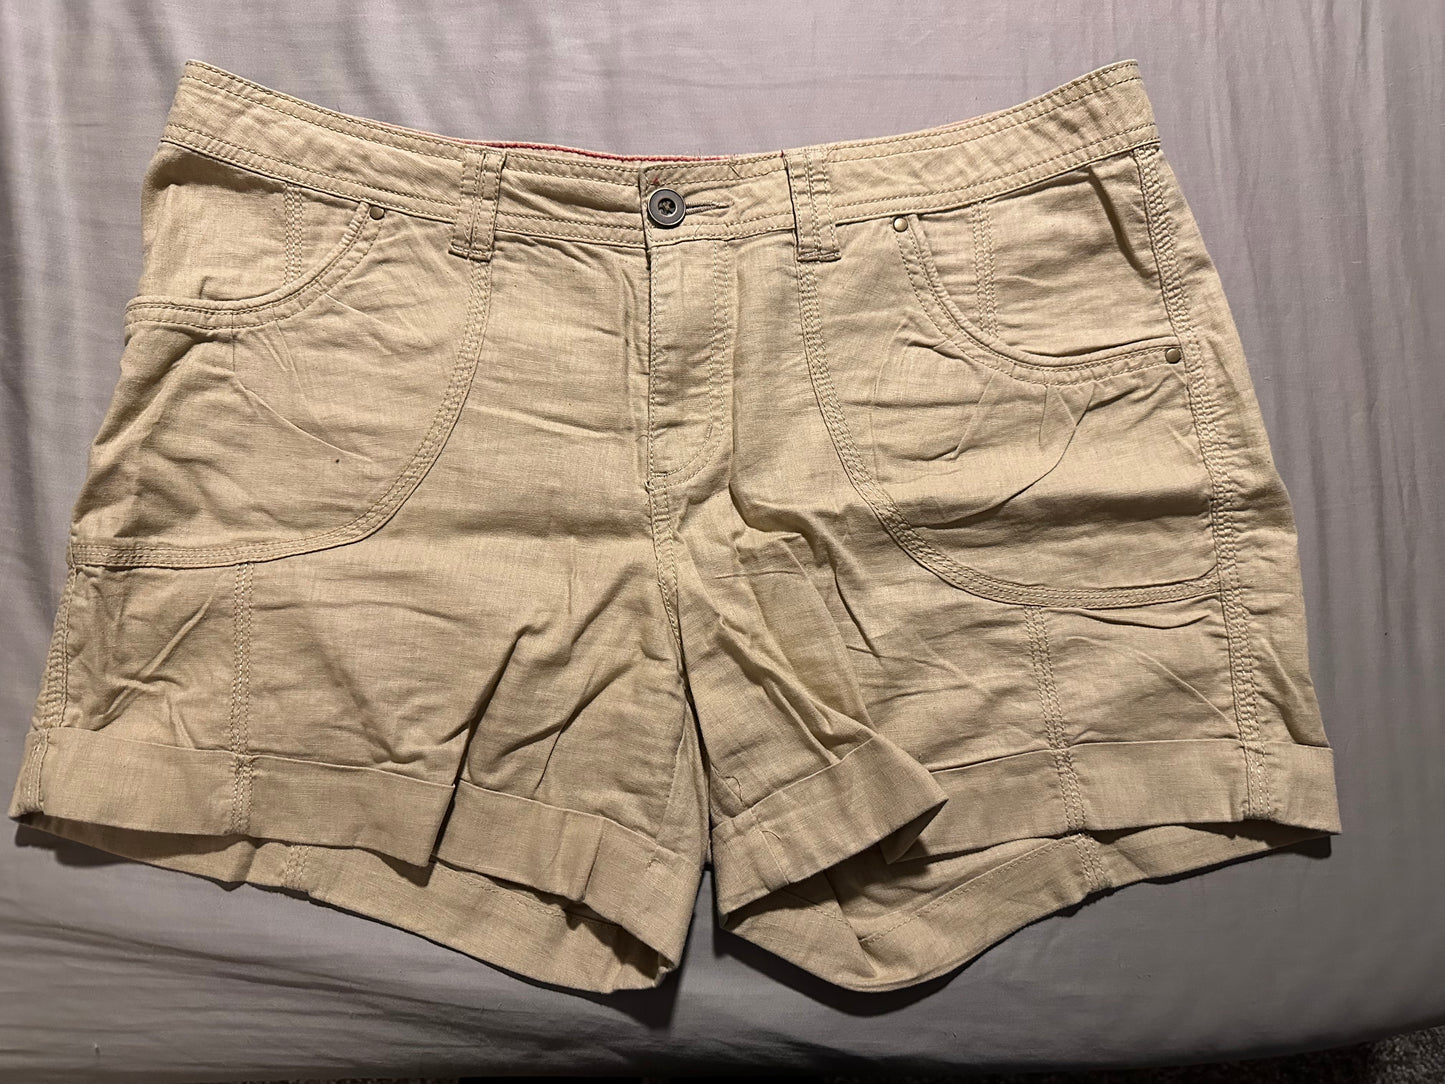 APT 9 size 14 shorts